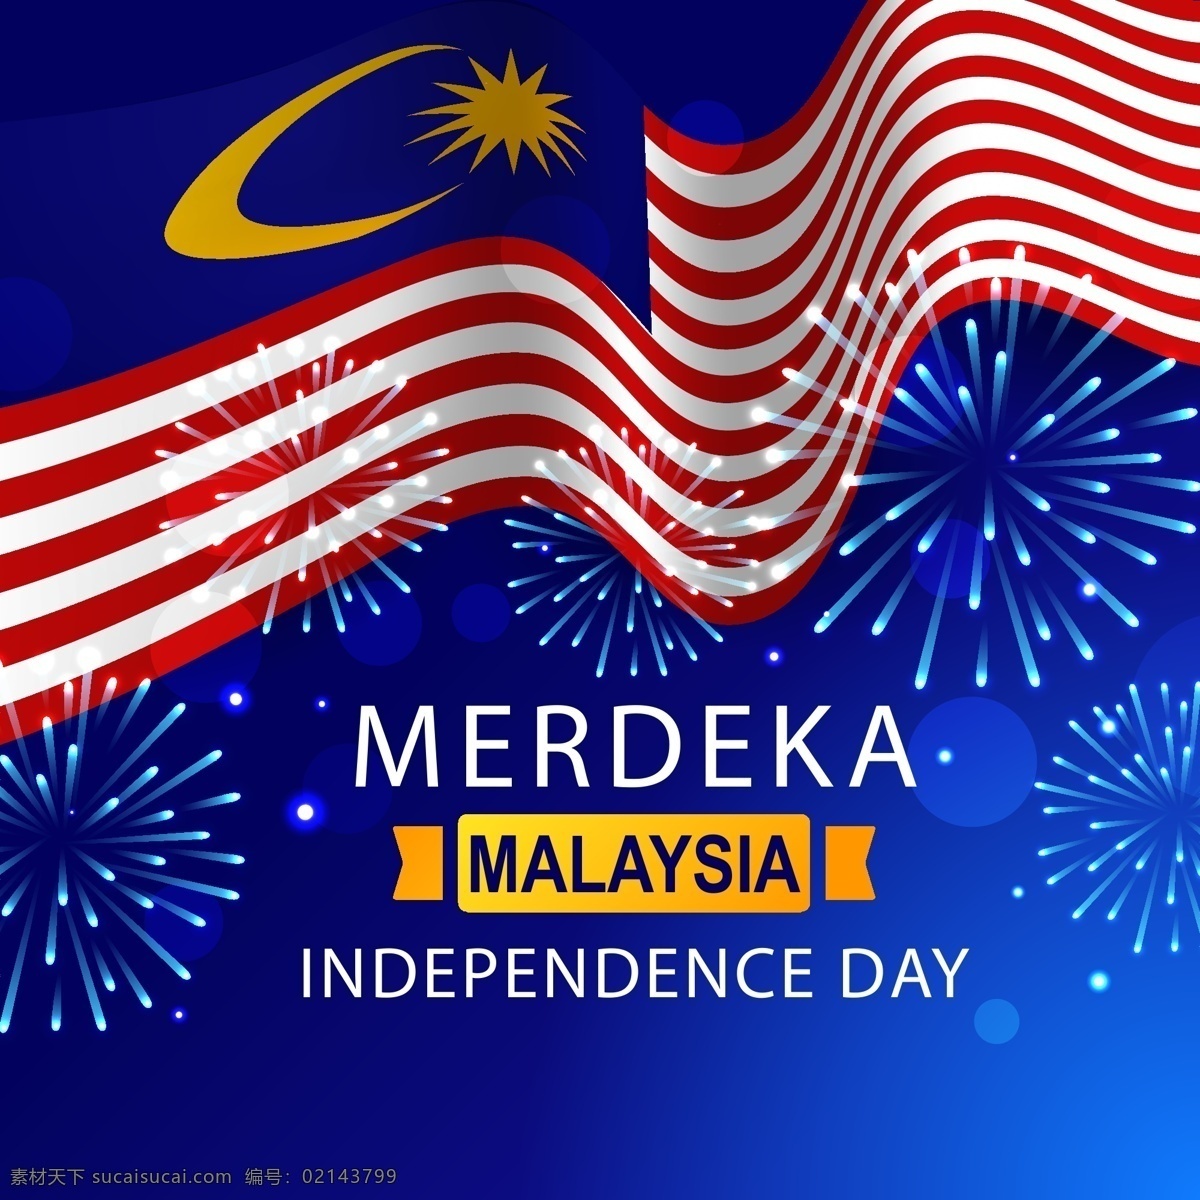 马来西亚 国旗 马来西亚国旗 马来西亚国庆 马来西亚独立 国庆 独立 马来西亚背景 马来西亚海报 共享设计矢量